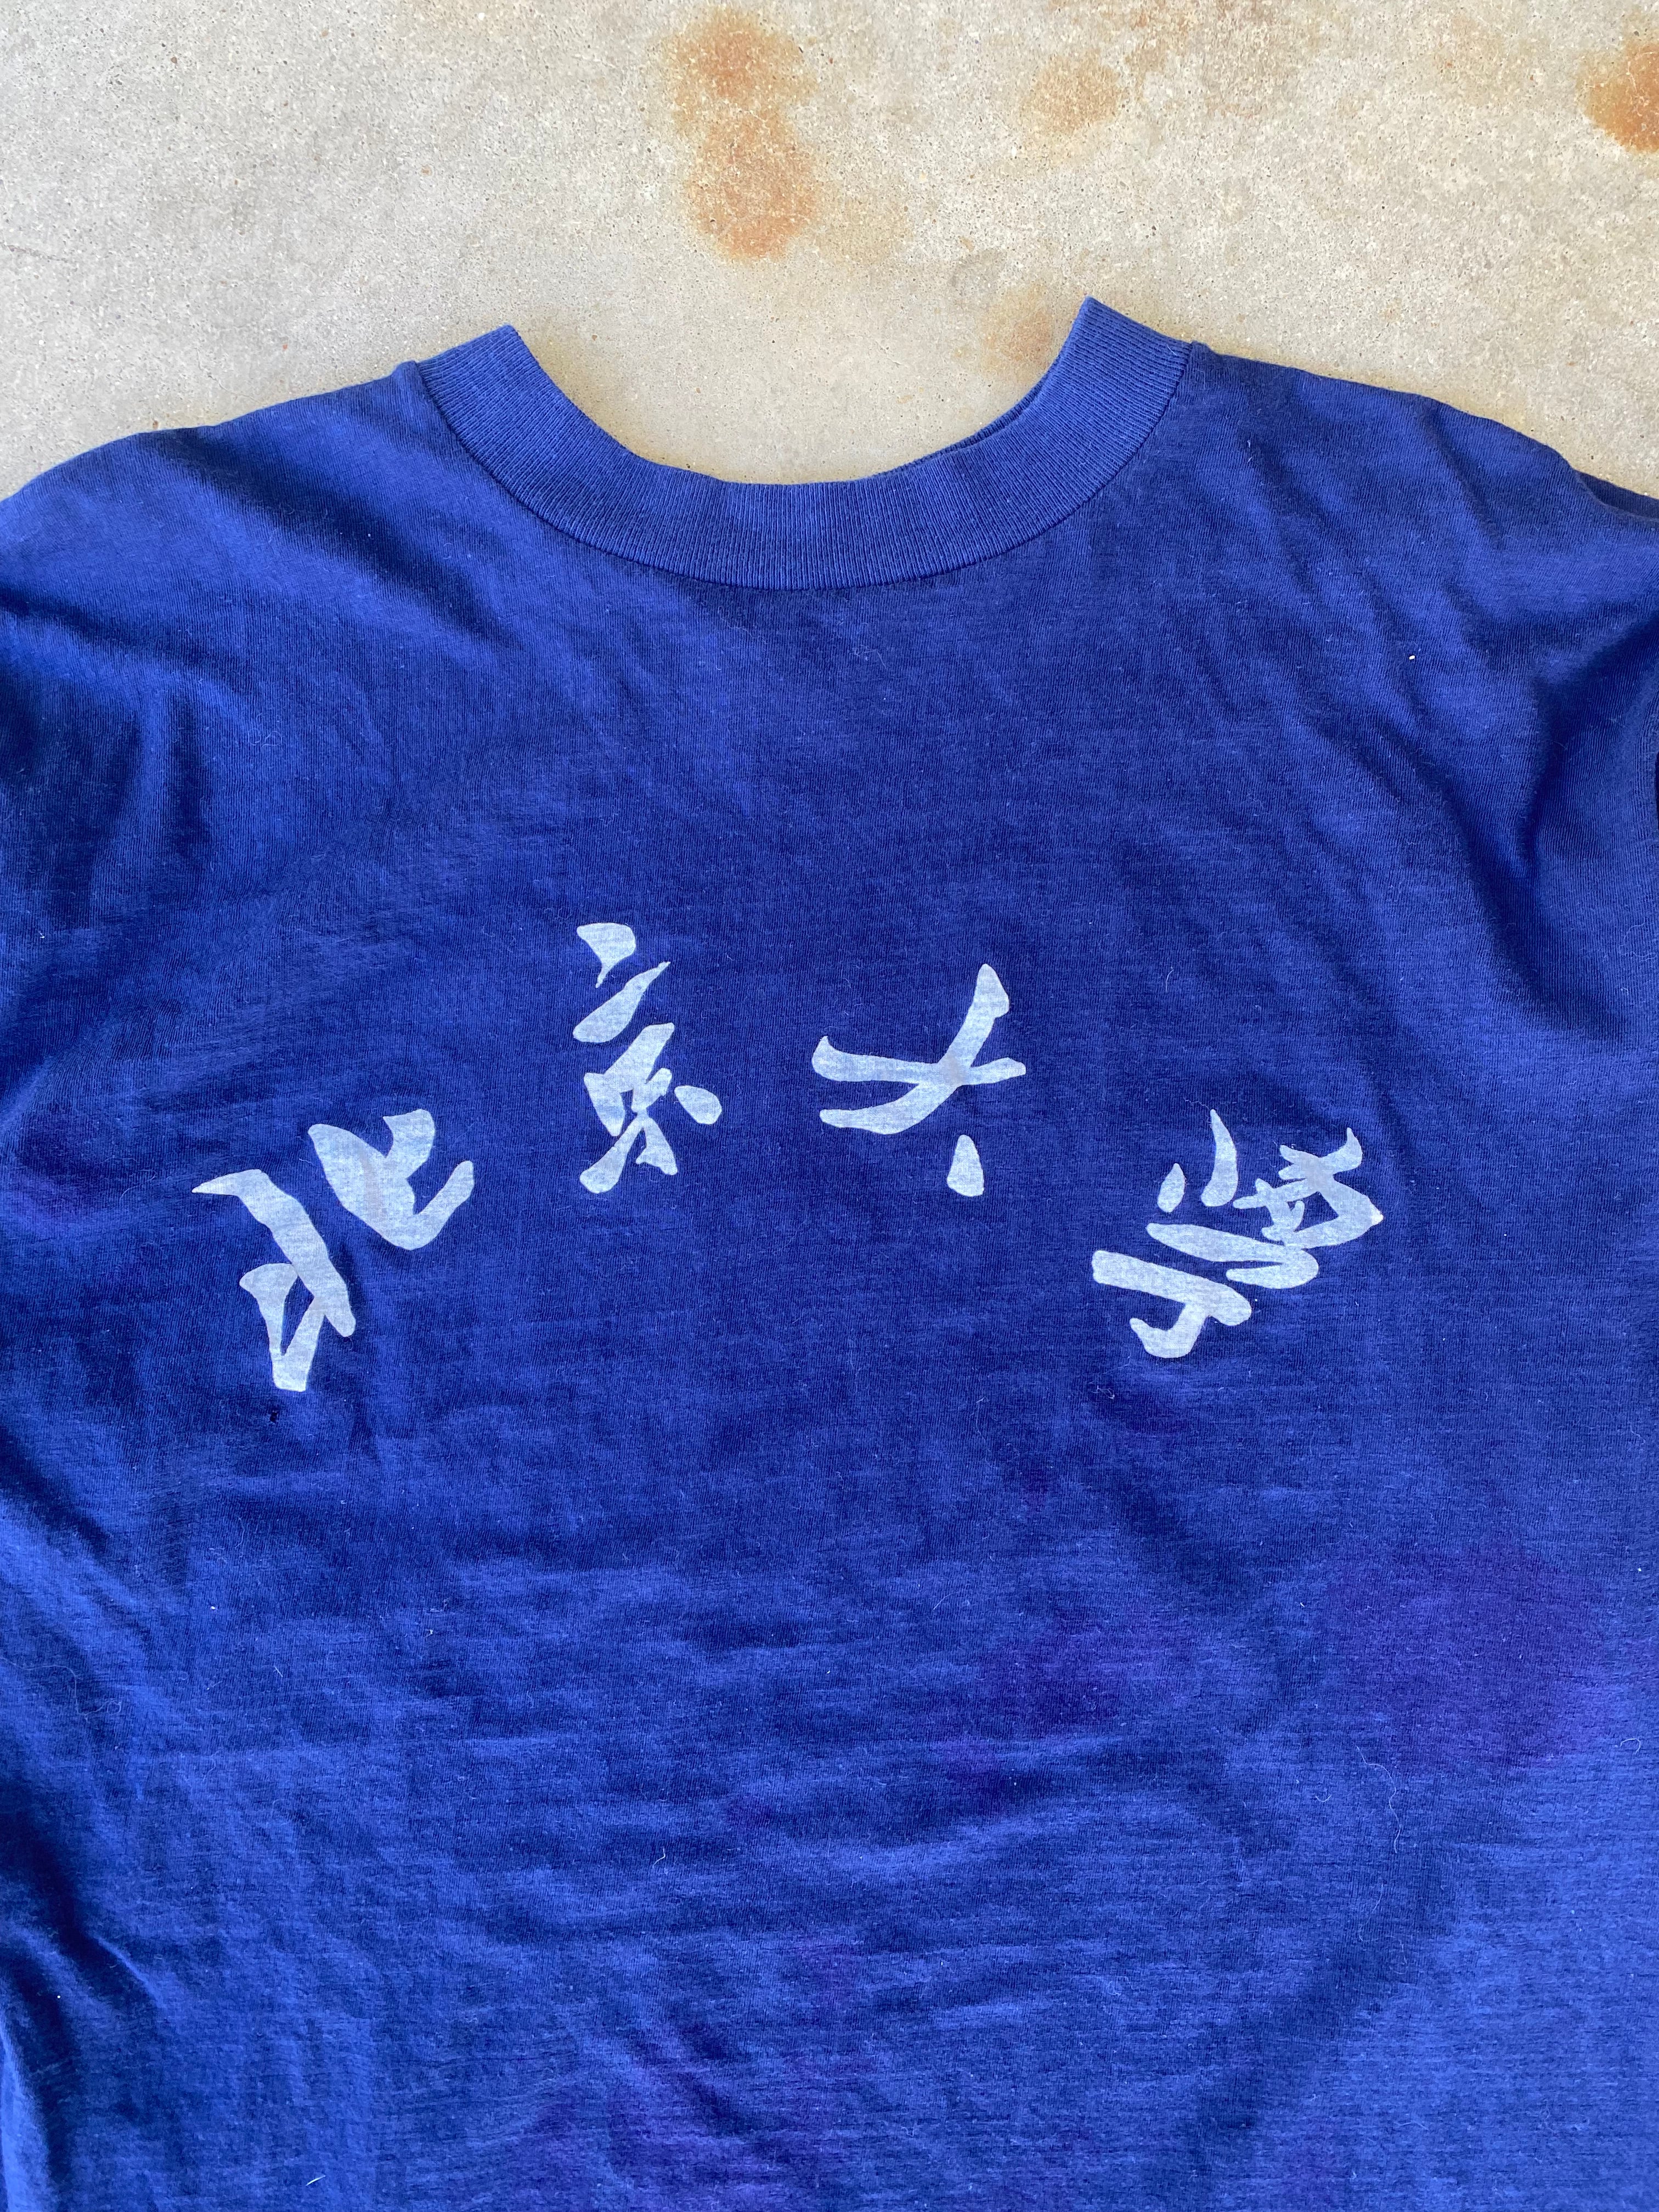 1980s Peking University T-Shirt (L)